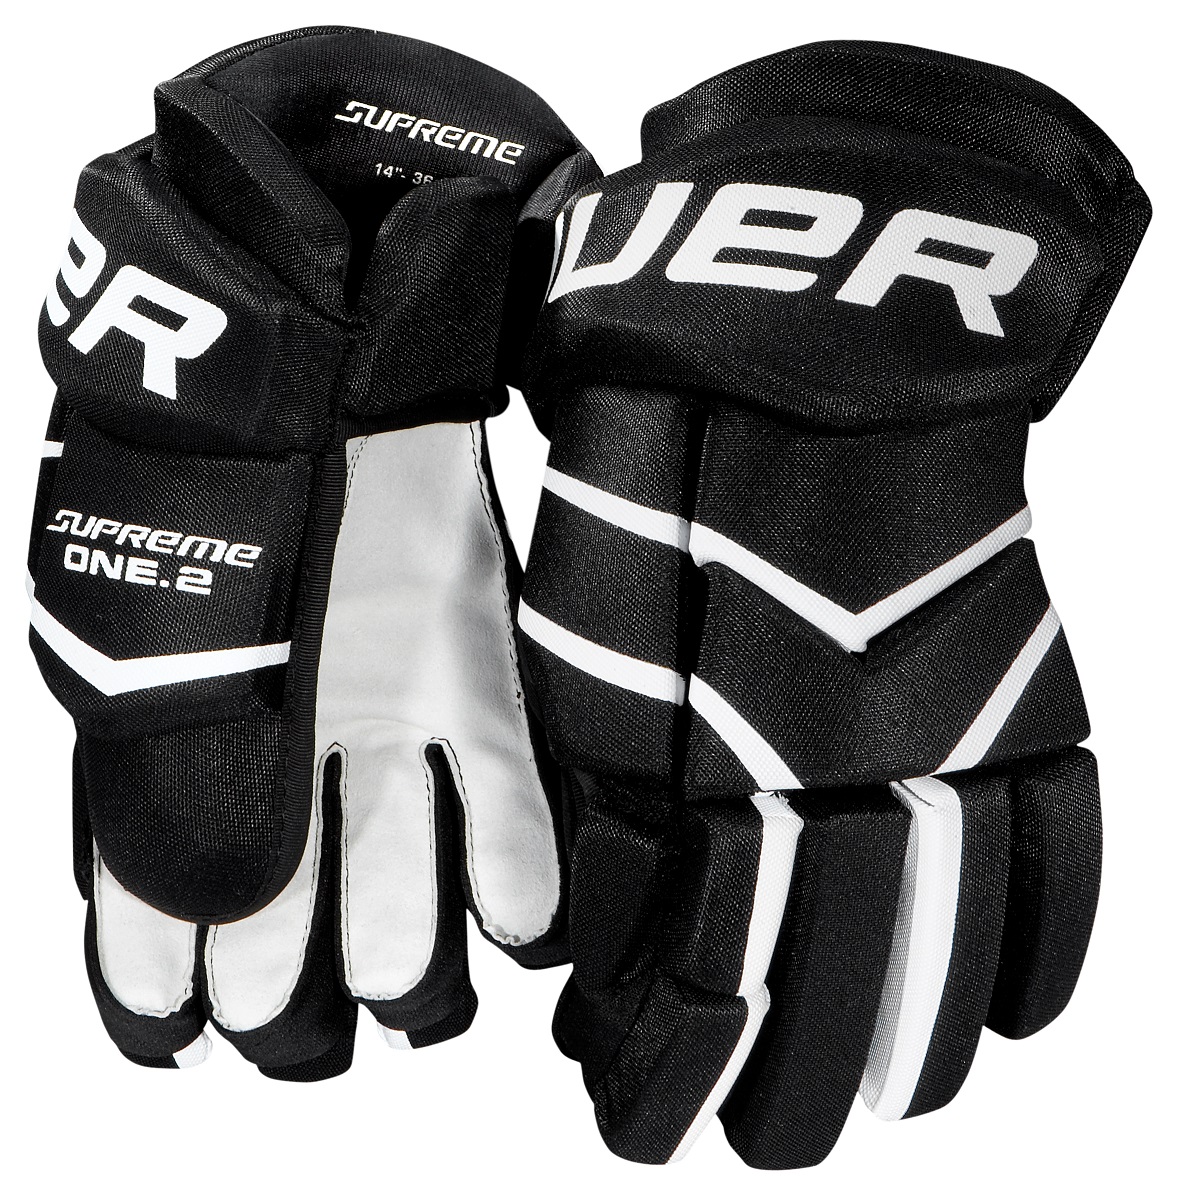 Bauer Supreme One.2 gloves